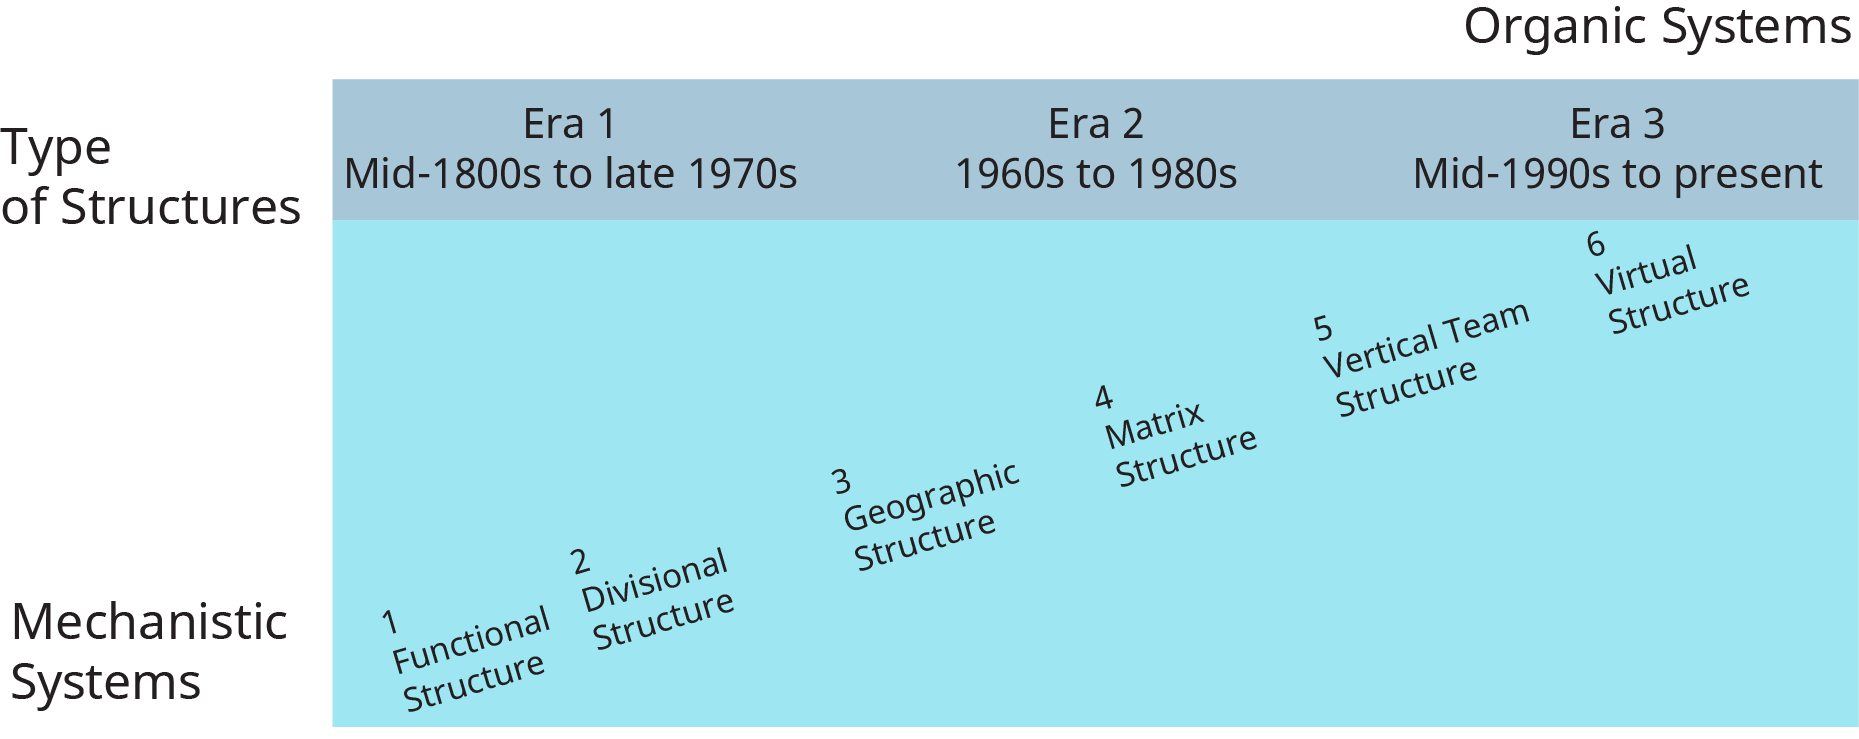 يوضح الرسم التخطيطي الهياكل التنظيمية المختلفة التي تطورت بمرور الوقت.